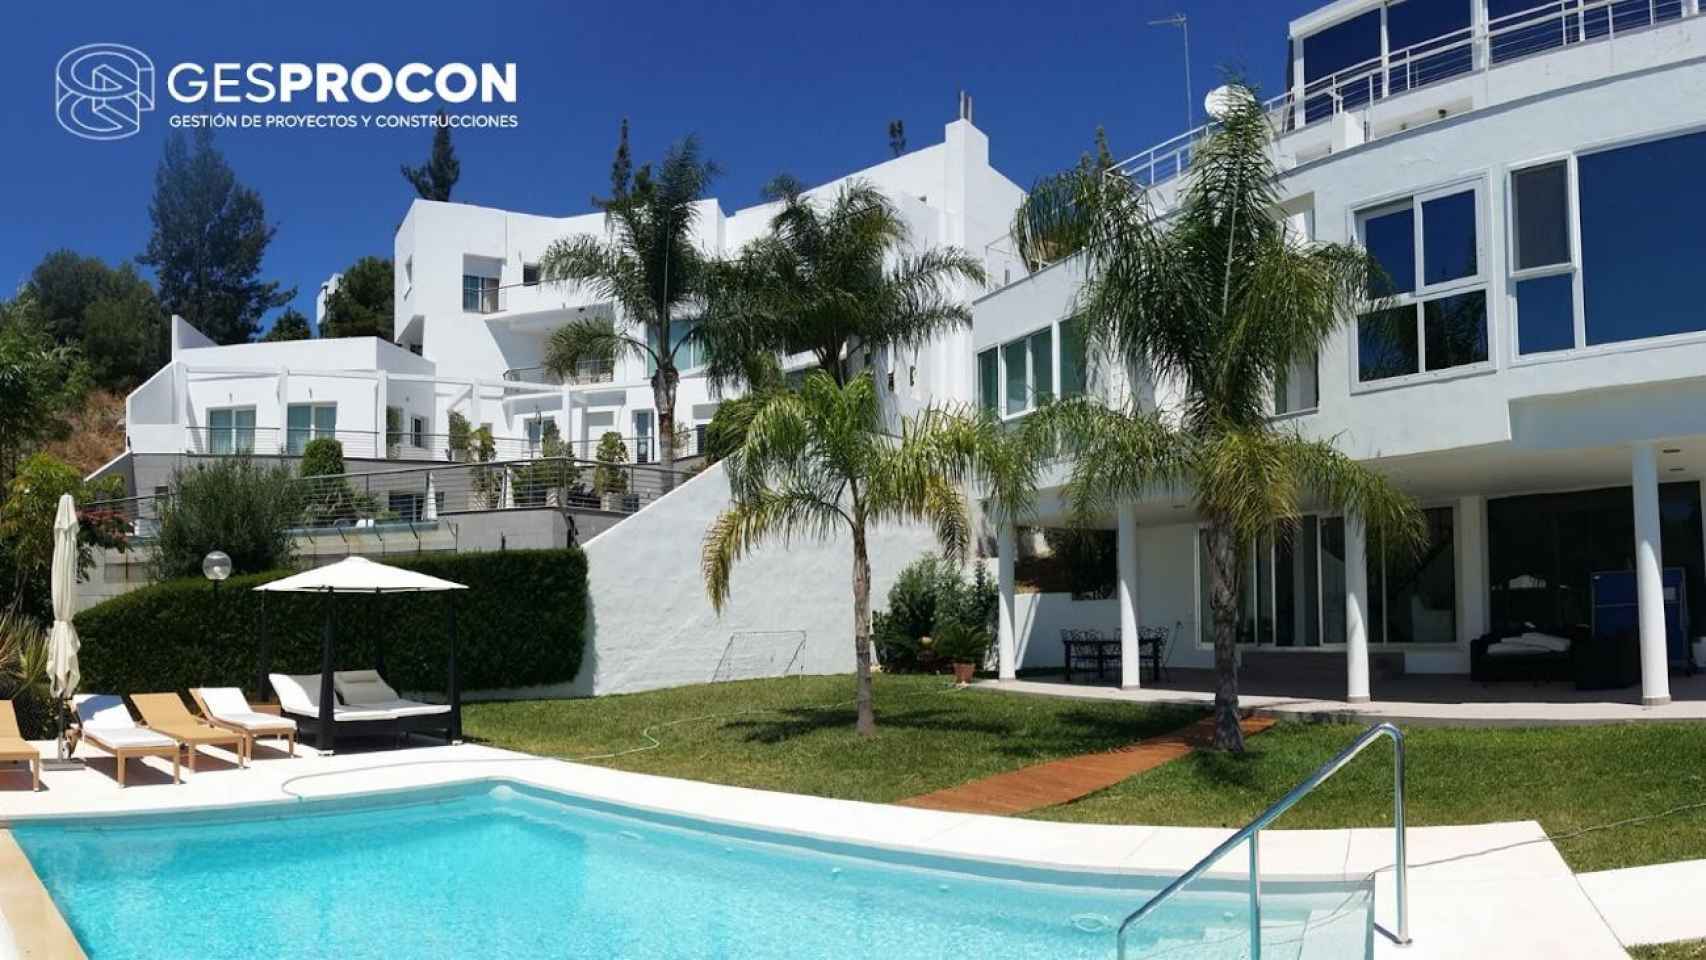 Gesprocon se consolida en la construcción de villas en Marbella y Málaga